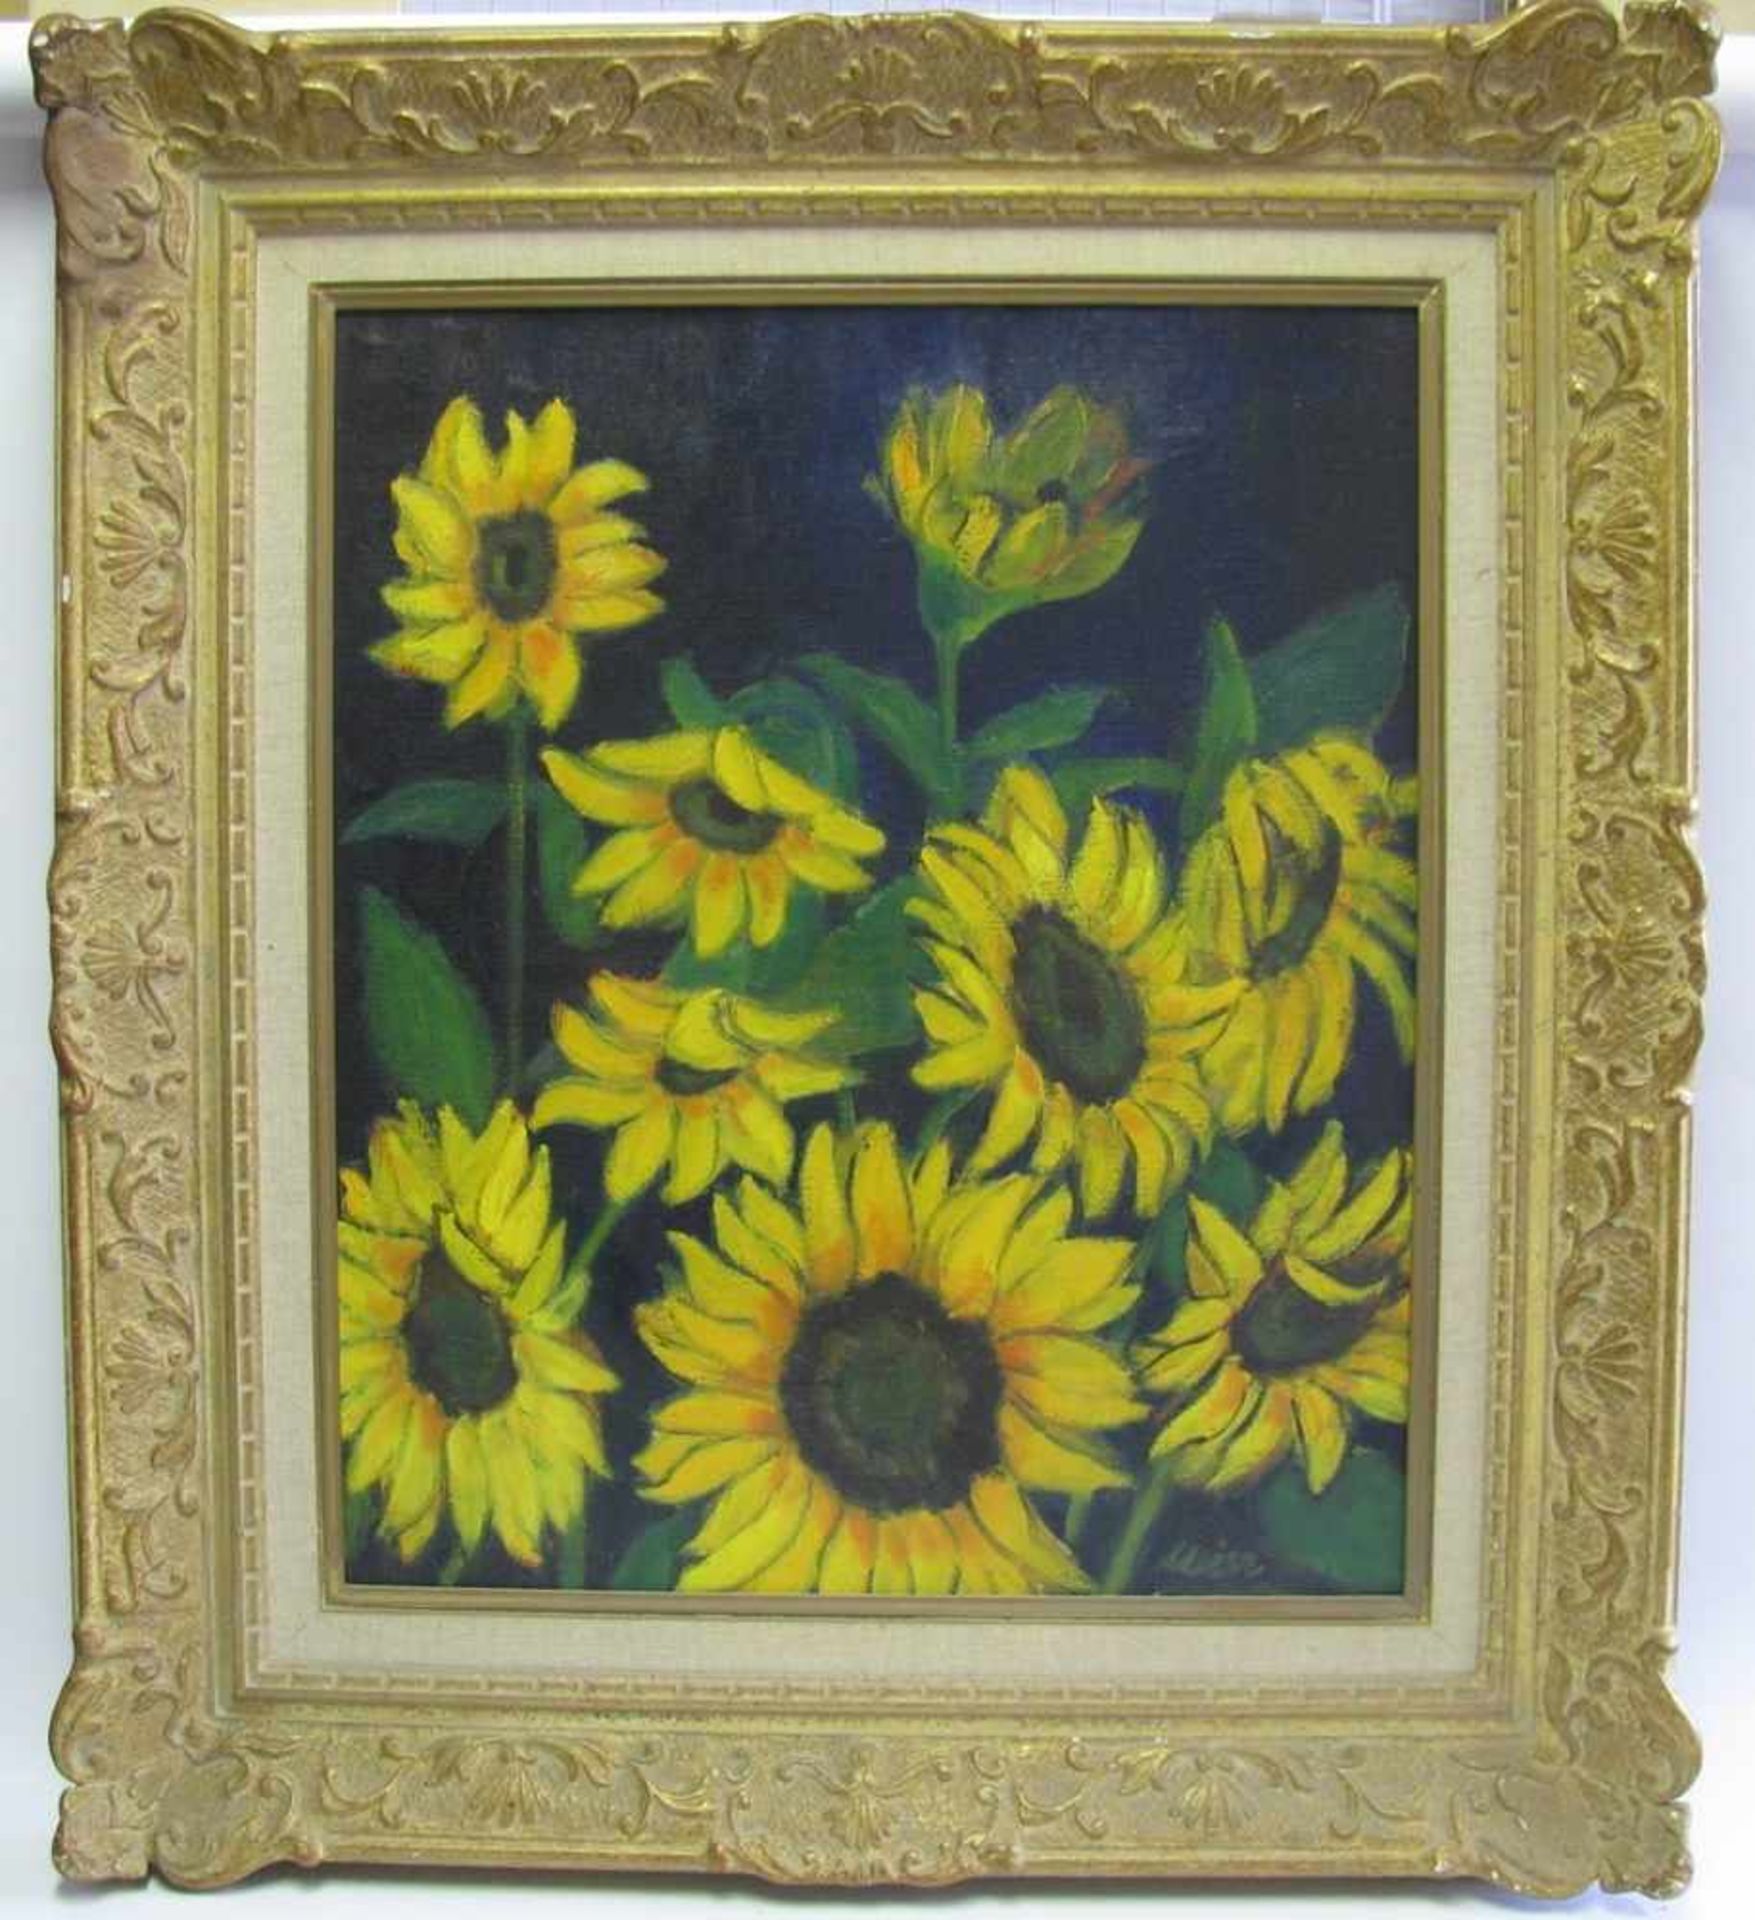 Meier, Maler 1. Hälfte 20. Jahrhundert, "Stillleben mit Sonnenblumen", re.u.sign., Öl/Leinwand, 56 x